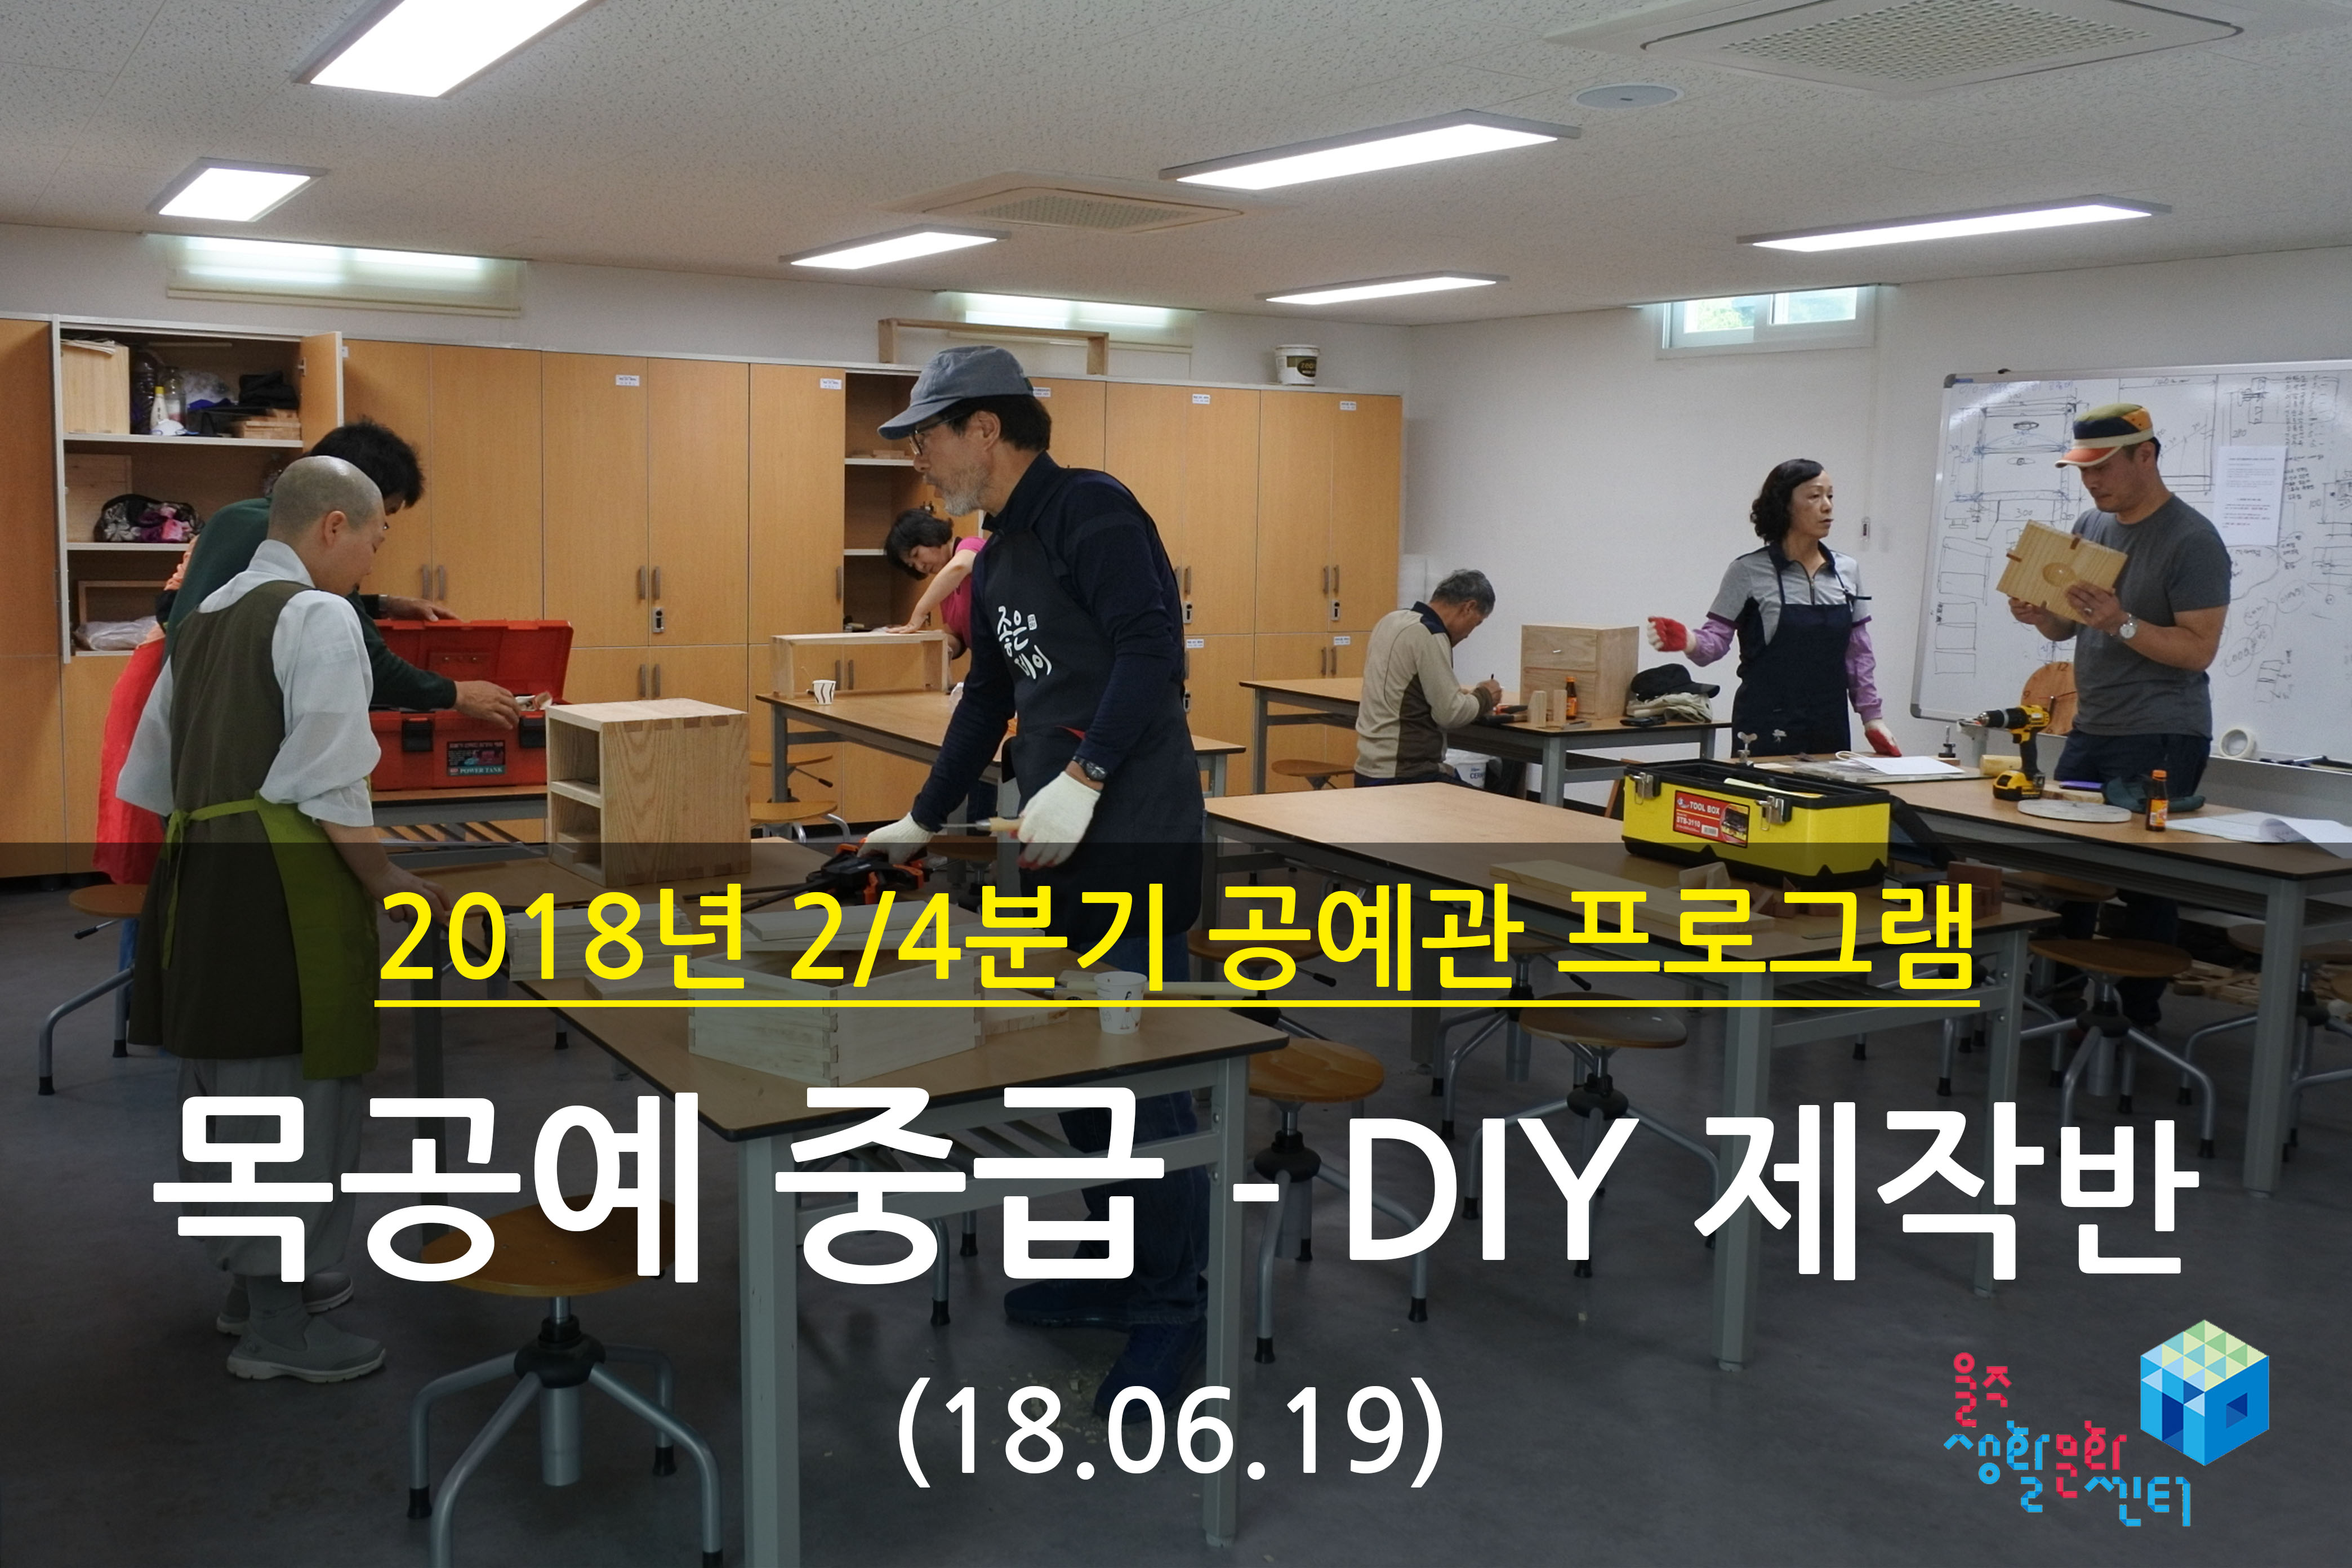 2018.06.19 _ 목공예 중급 - DIY 제작반 _ 2/4분기 11주차 수업